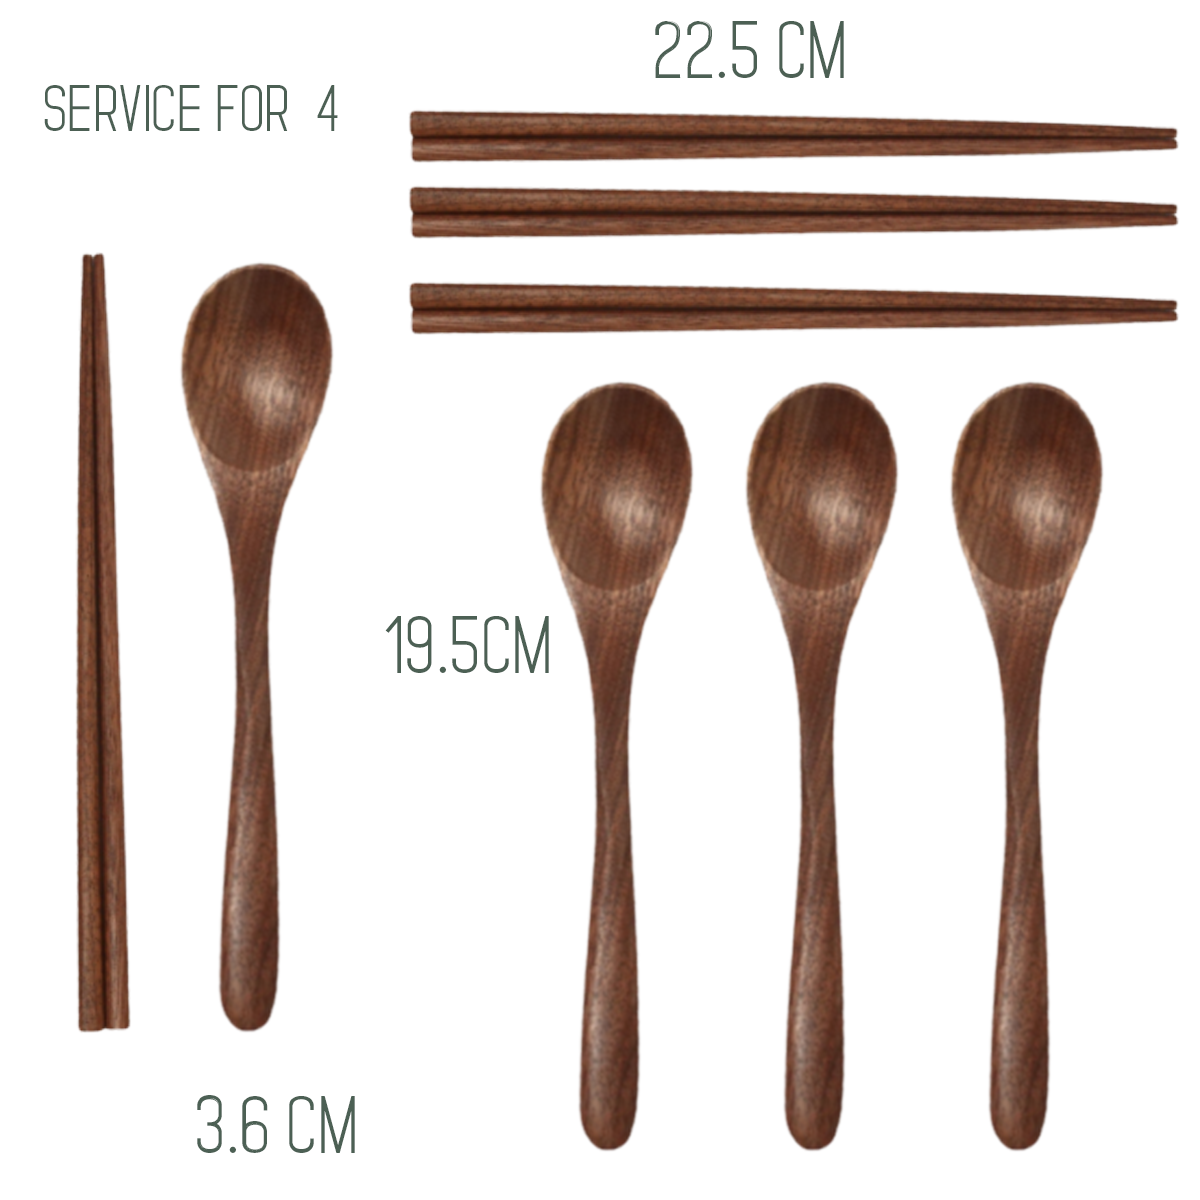 Black walnut utensils